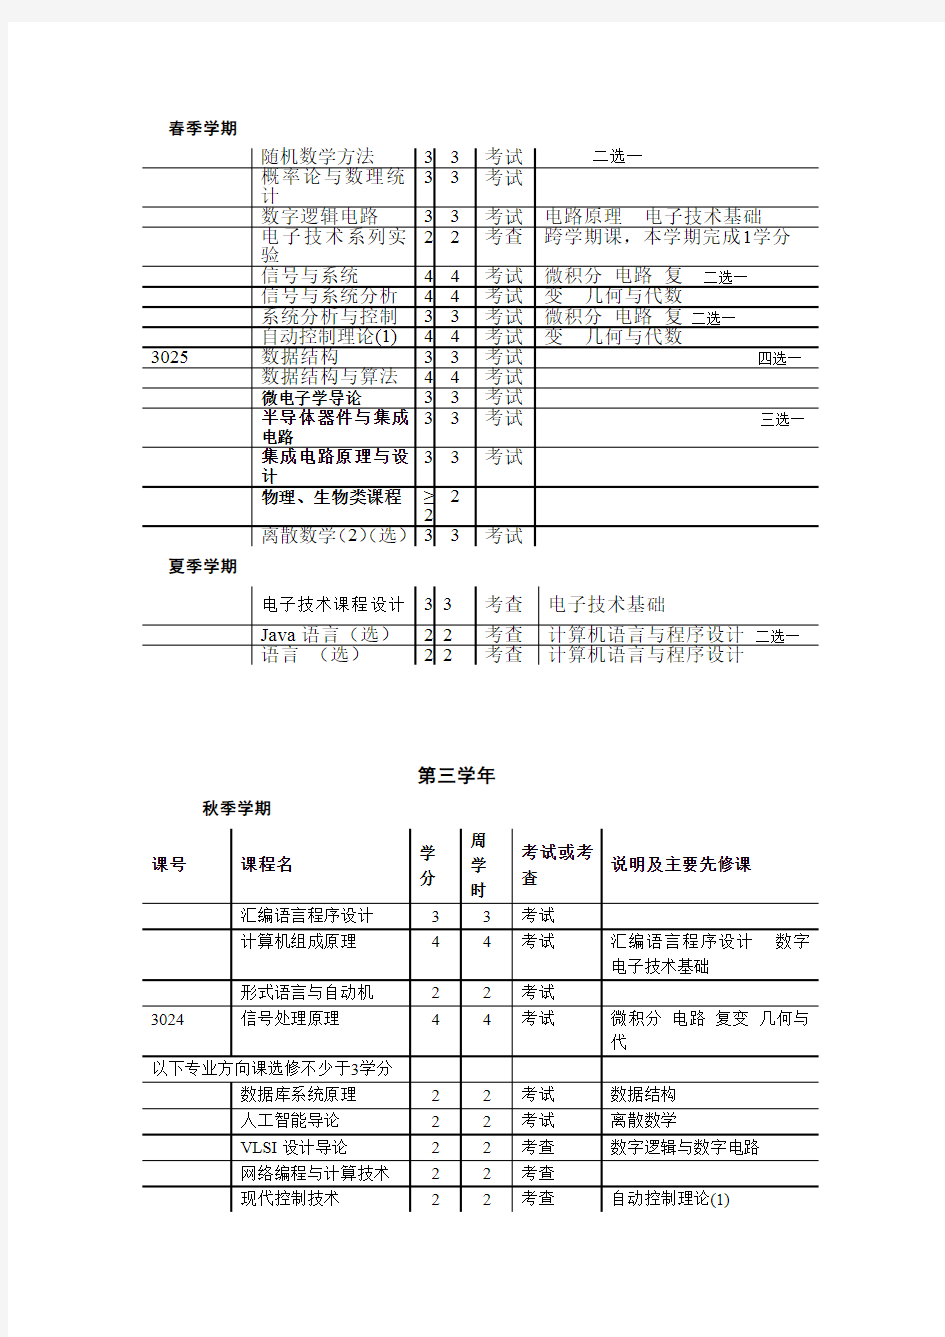 清华大学计算机科学与技术专业课程表(最新整理)